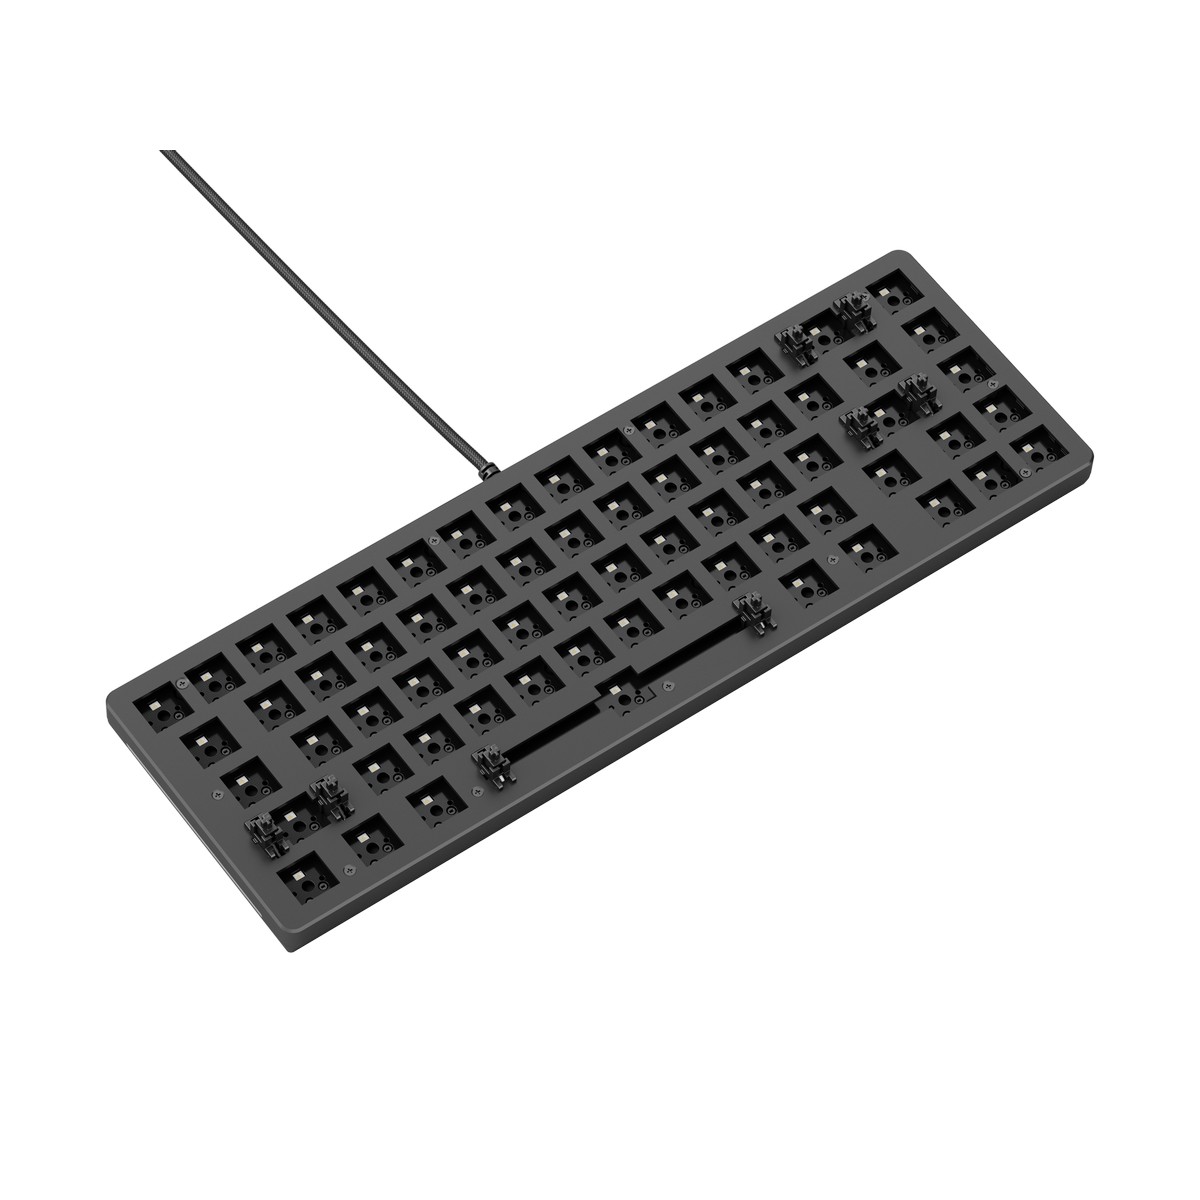 Glorious GMMK 2 65% Keyboard Barebone ANSI-Layout - Black